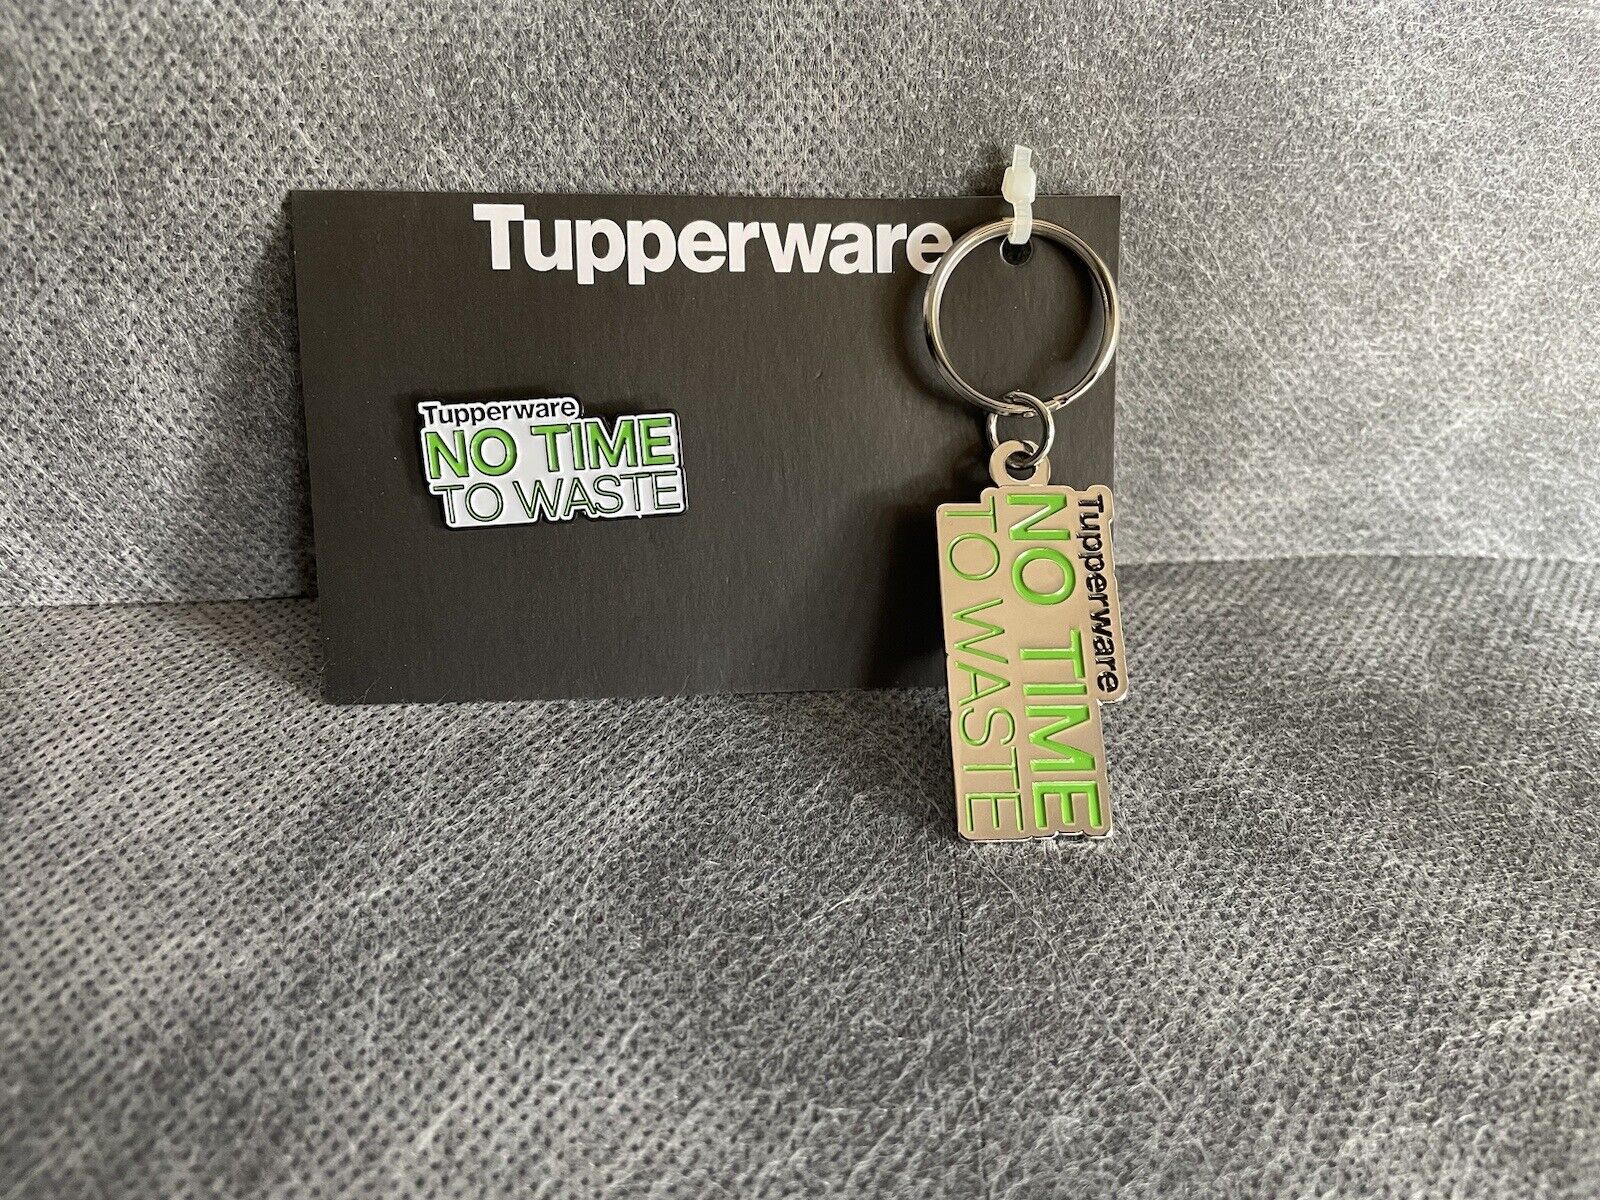 Tupperware No Time To Waist NTTW Keychain & Pin Set New